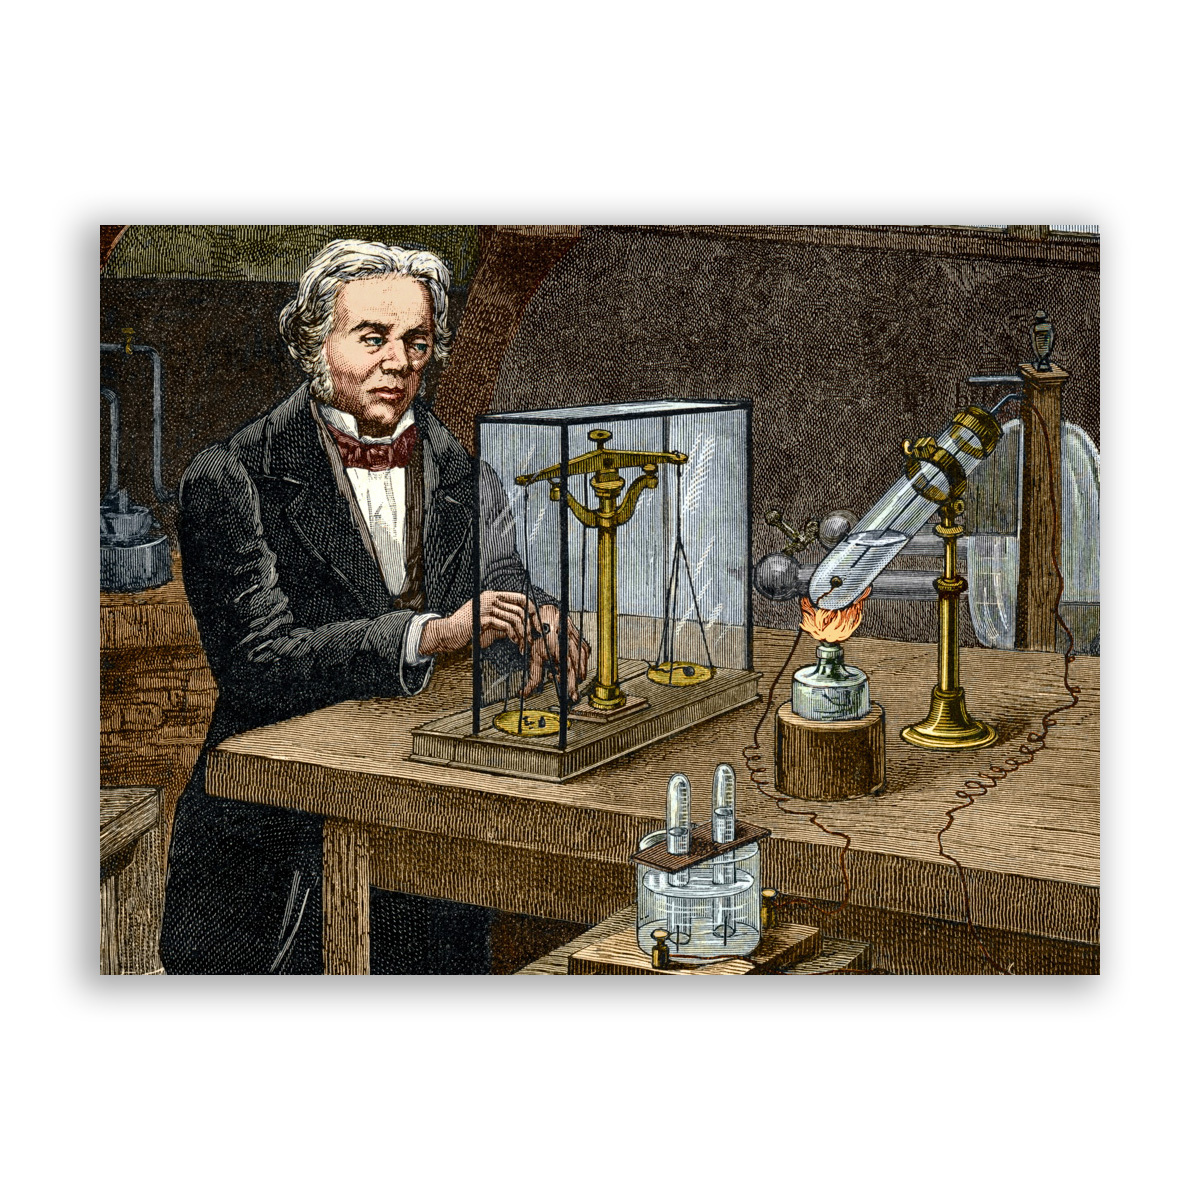 Ученый физик 19 века